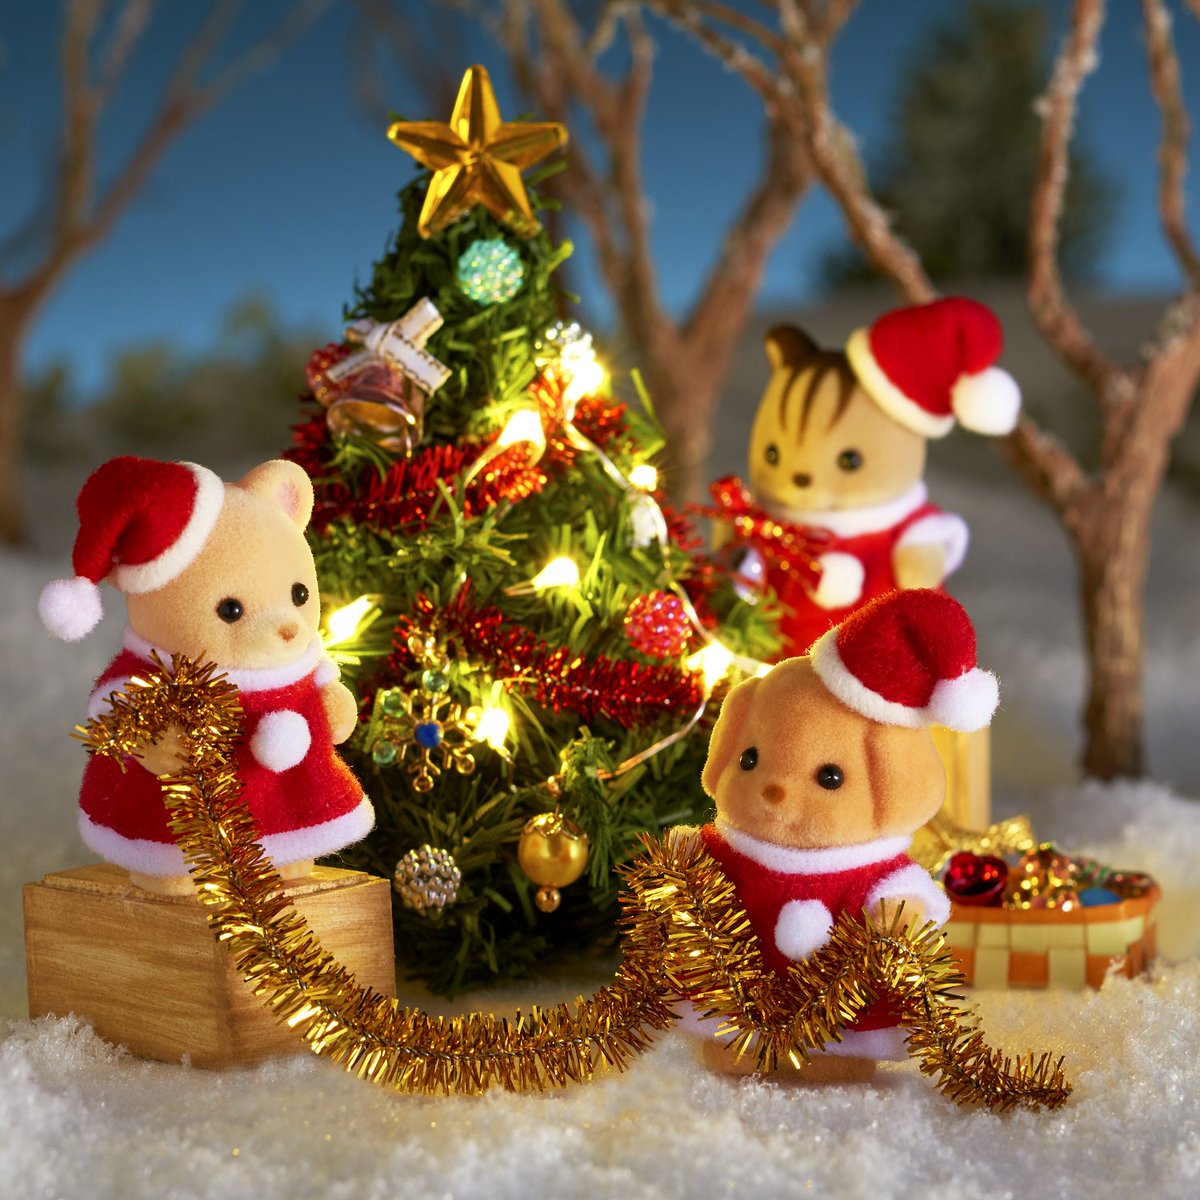 ট ইট র シルバニアファミリー 公式 今日は クリスマスツリーの日 T Co Wblr8geiej 赤ちゃんたちは一生懸命かざりつけ中です どんなクリスマスツリーになるか楽しみですね シルバニアファミリー シルバニア クリスマス クリスマスツリー